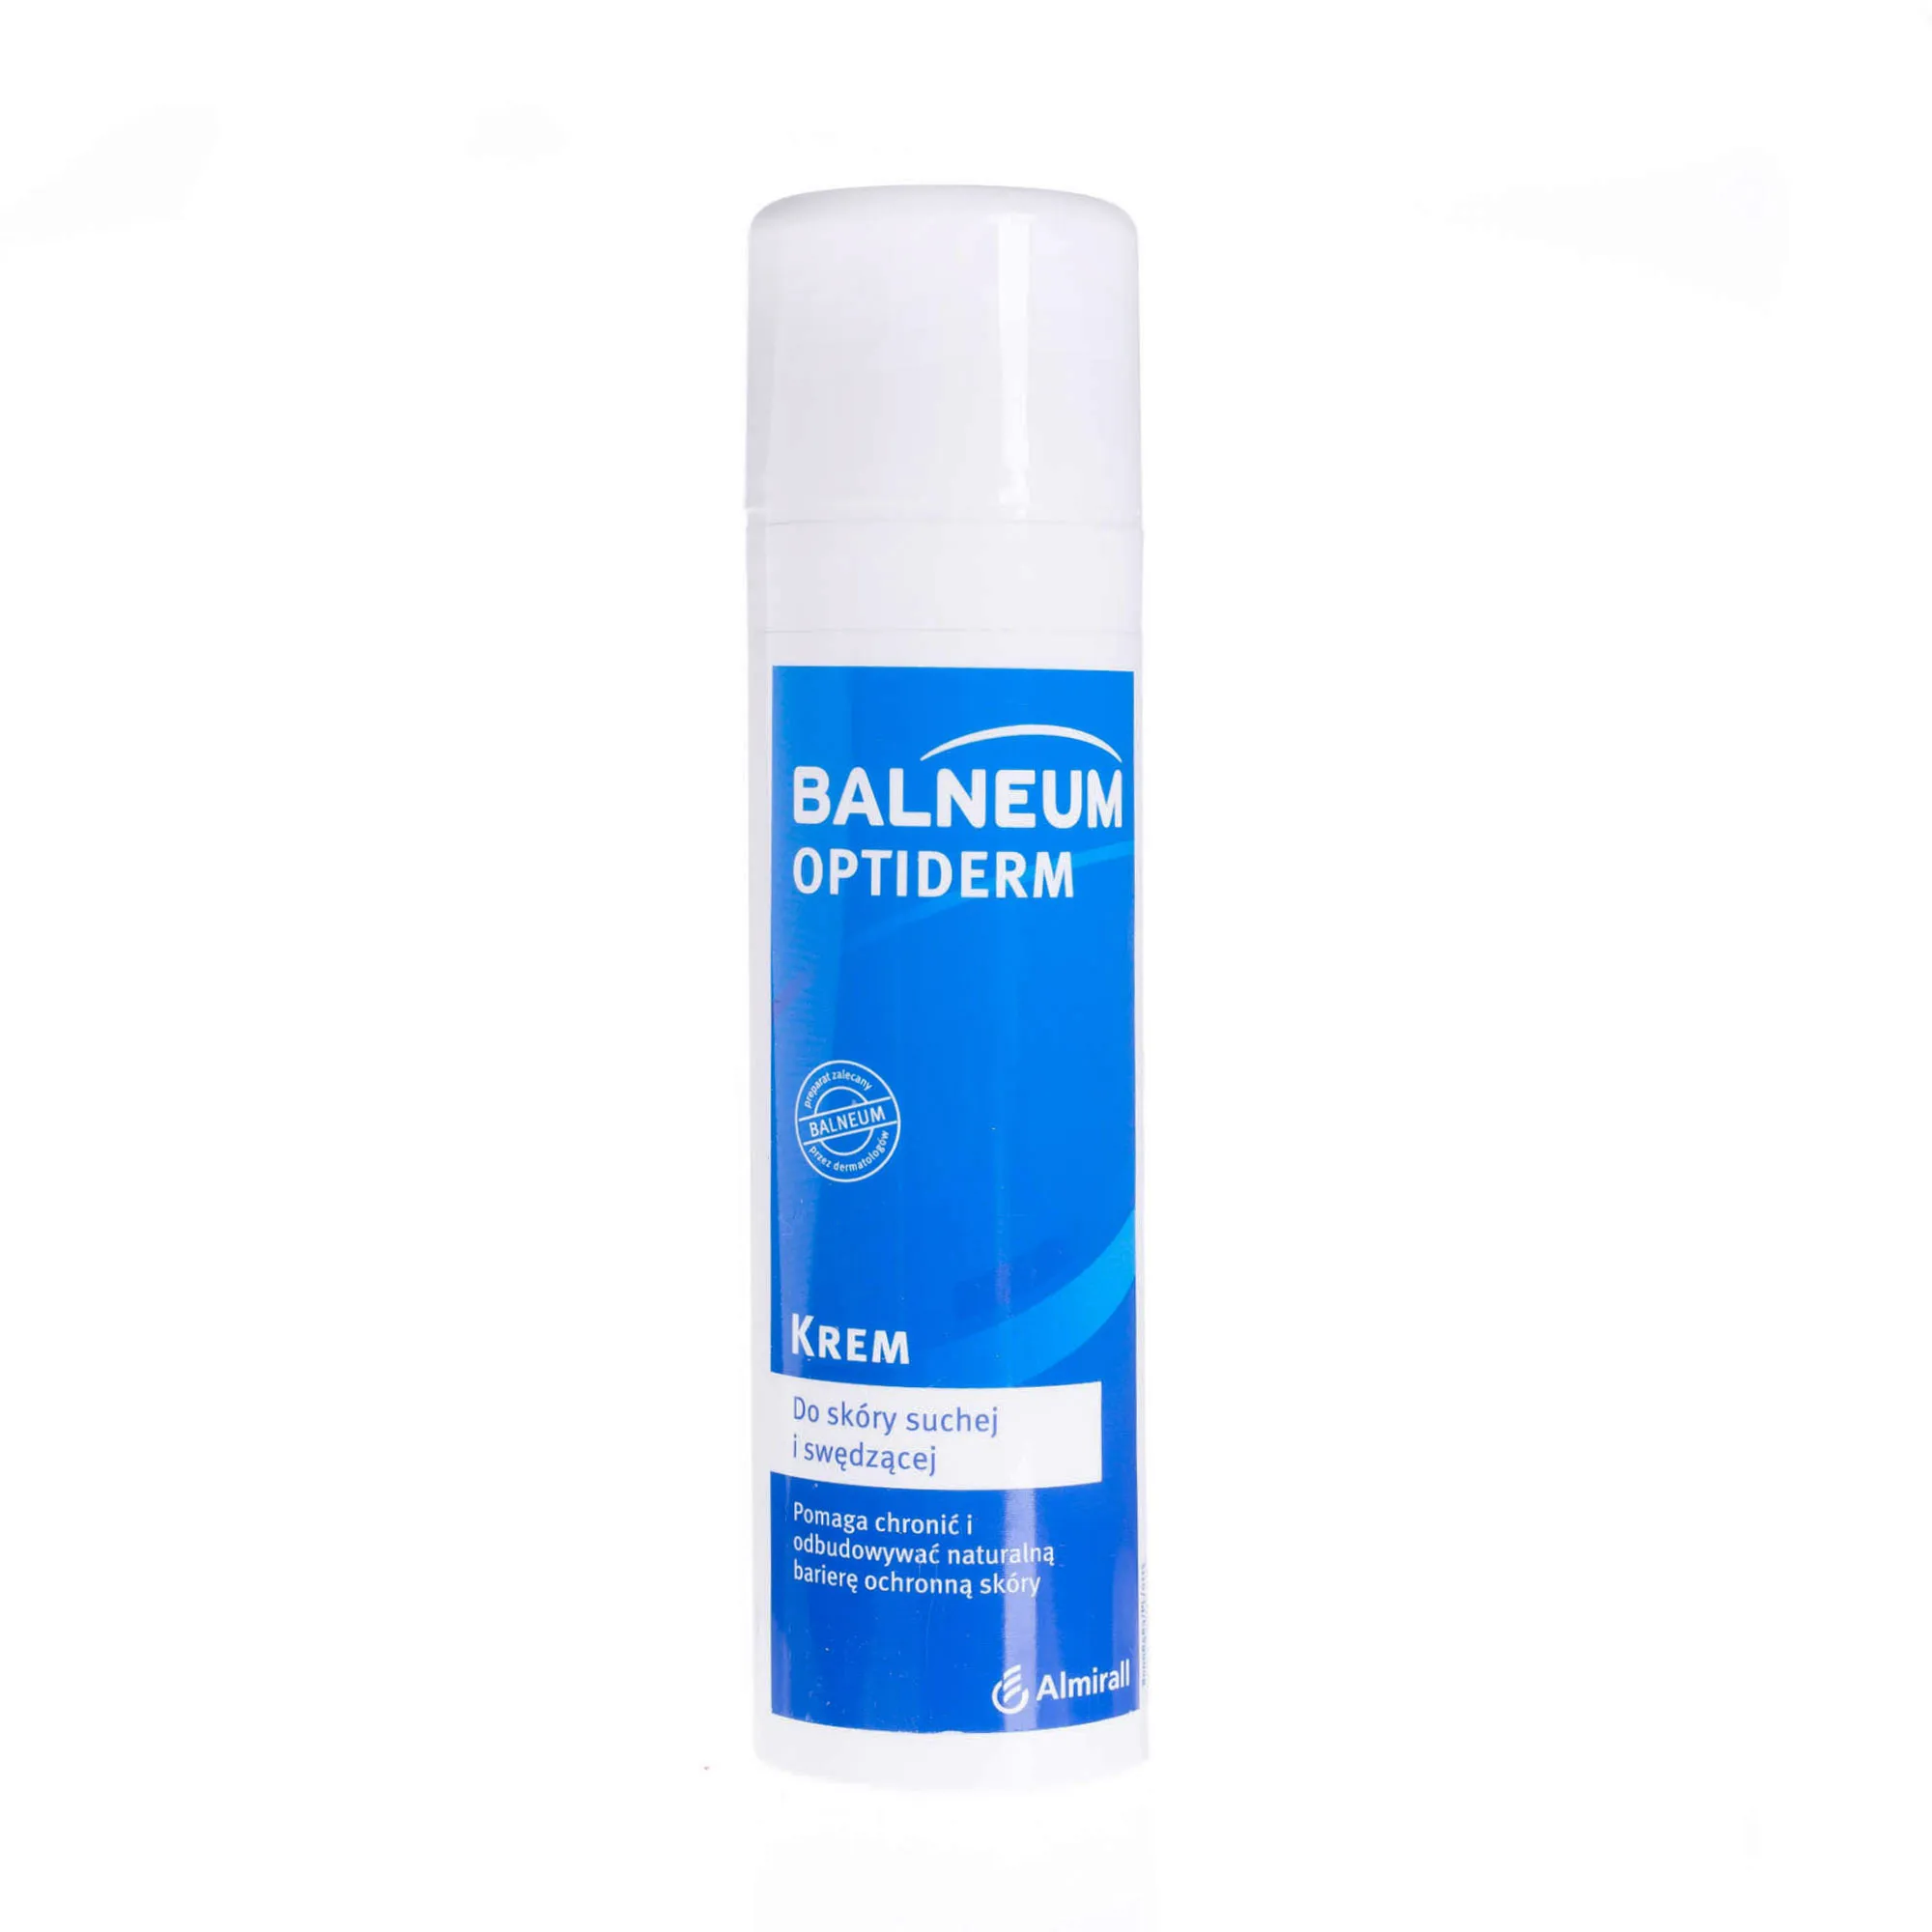 Balneum Optiderm, krem do skóry suchej i swędzącej, 200 ml 